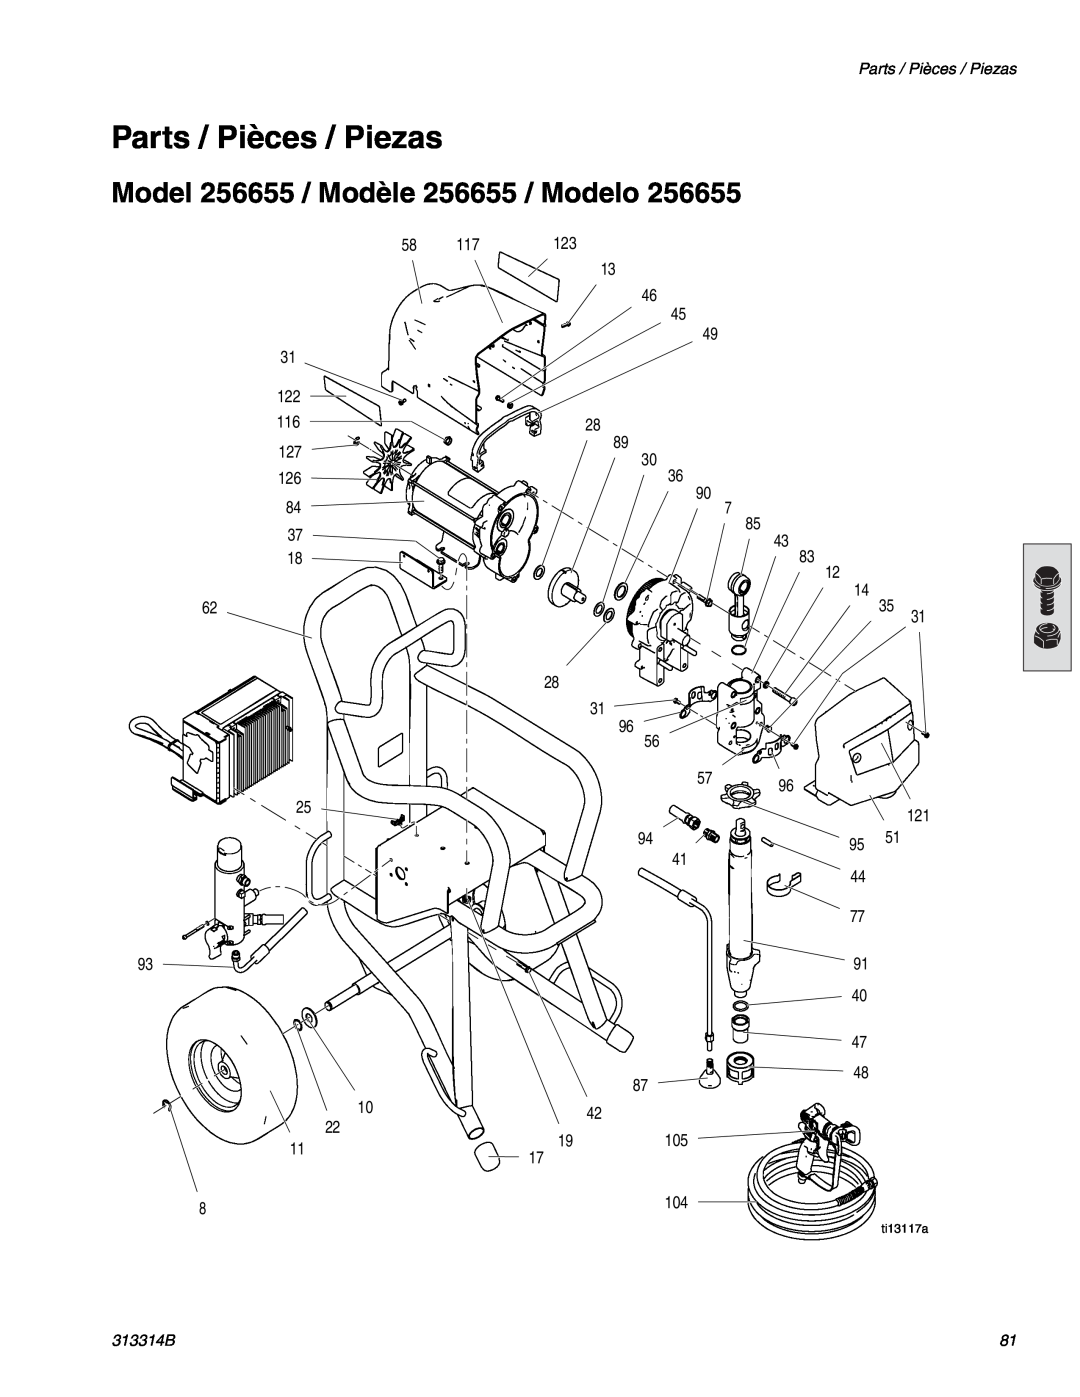 Graco Inc 300E Parts / Pièces / Piezas, Model 256655 / Modèle 256655 / Modelo, 313314B, ti13117a 